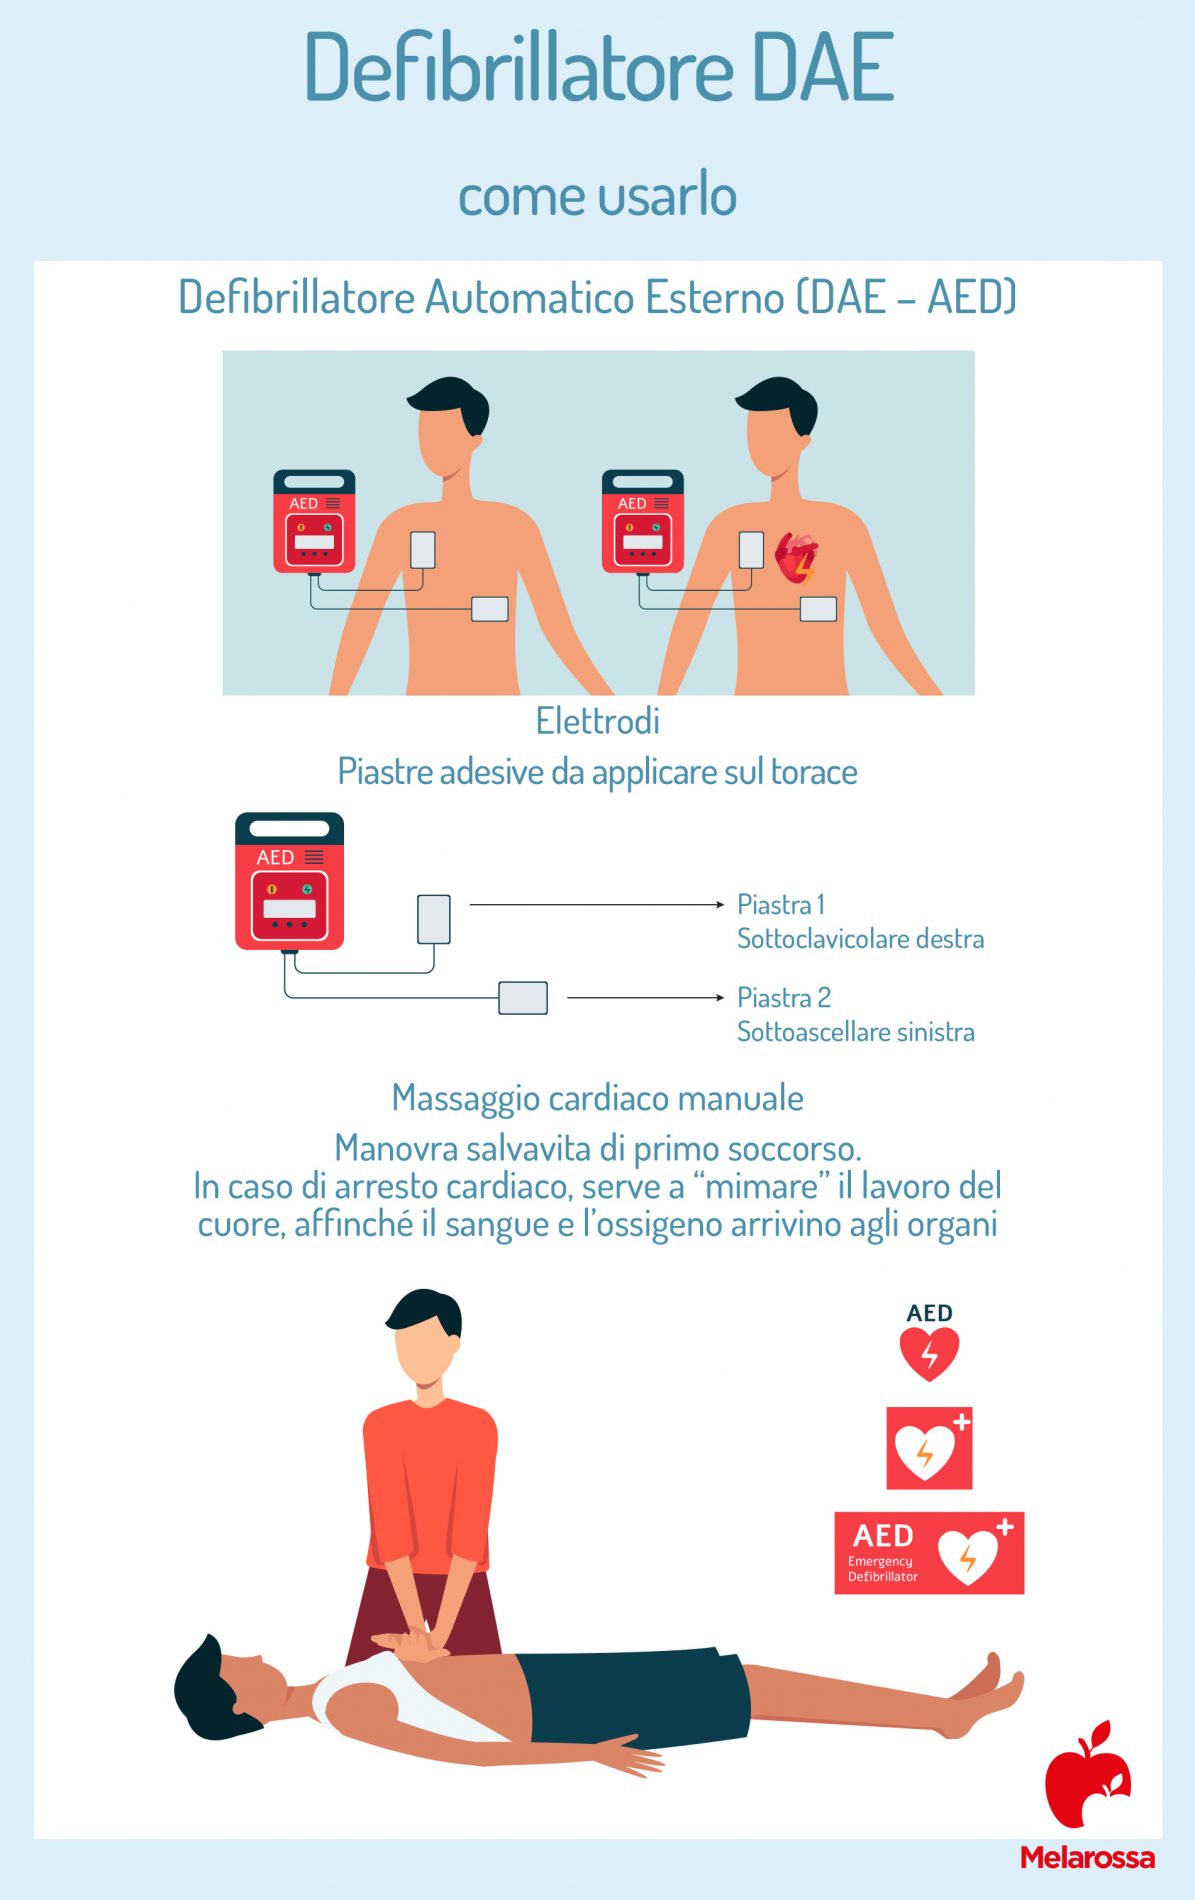 defibrillatore DAE: come usarlo